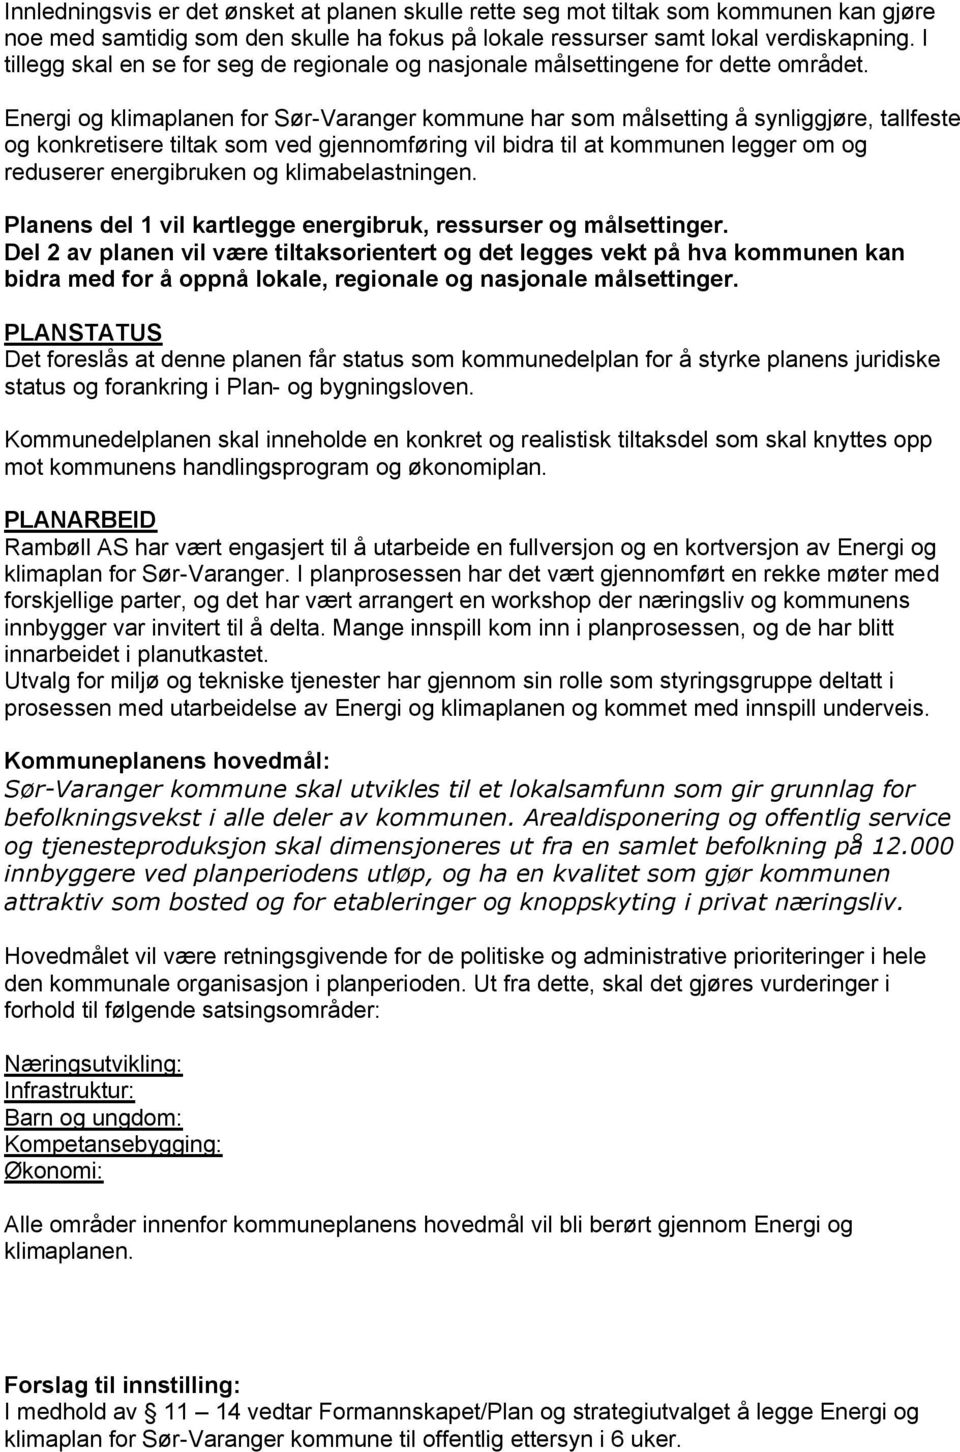 Energi og klimaplanen for Sør-Varanger kommune har som målsetting å synliggjøre, tallfeste og konkretisere tiltak som ved gjennomføring vil bidra til at kommunen legger om og reduserer energibruken